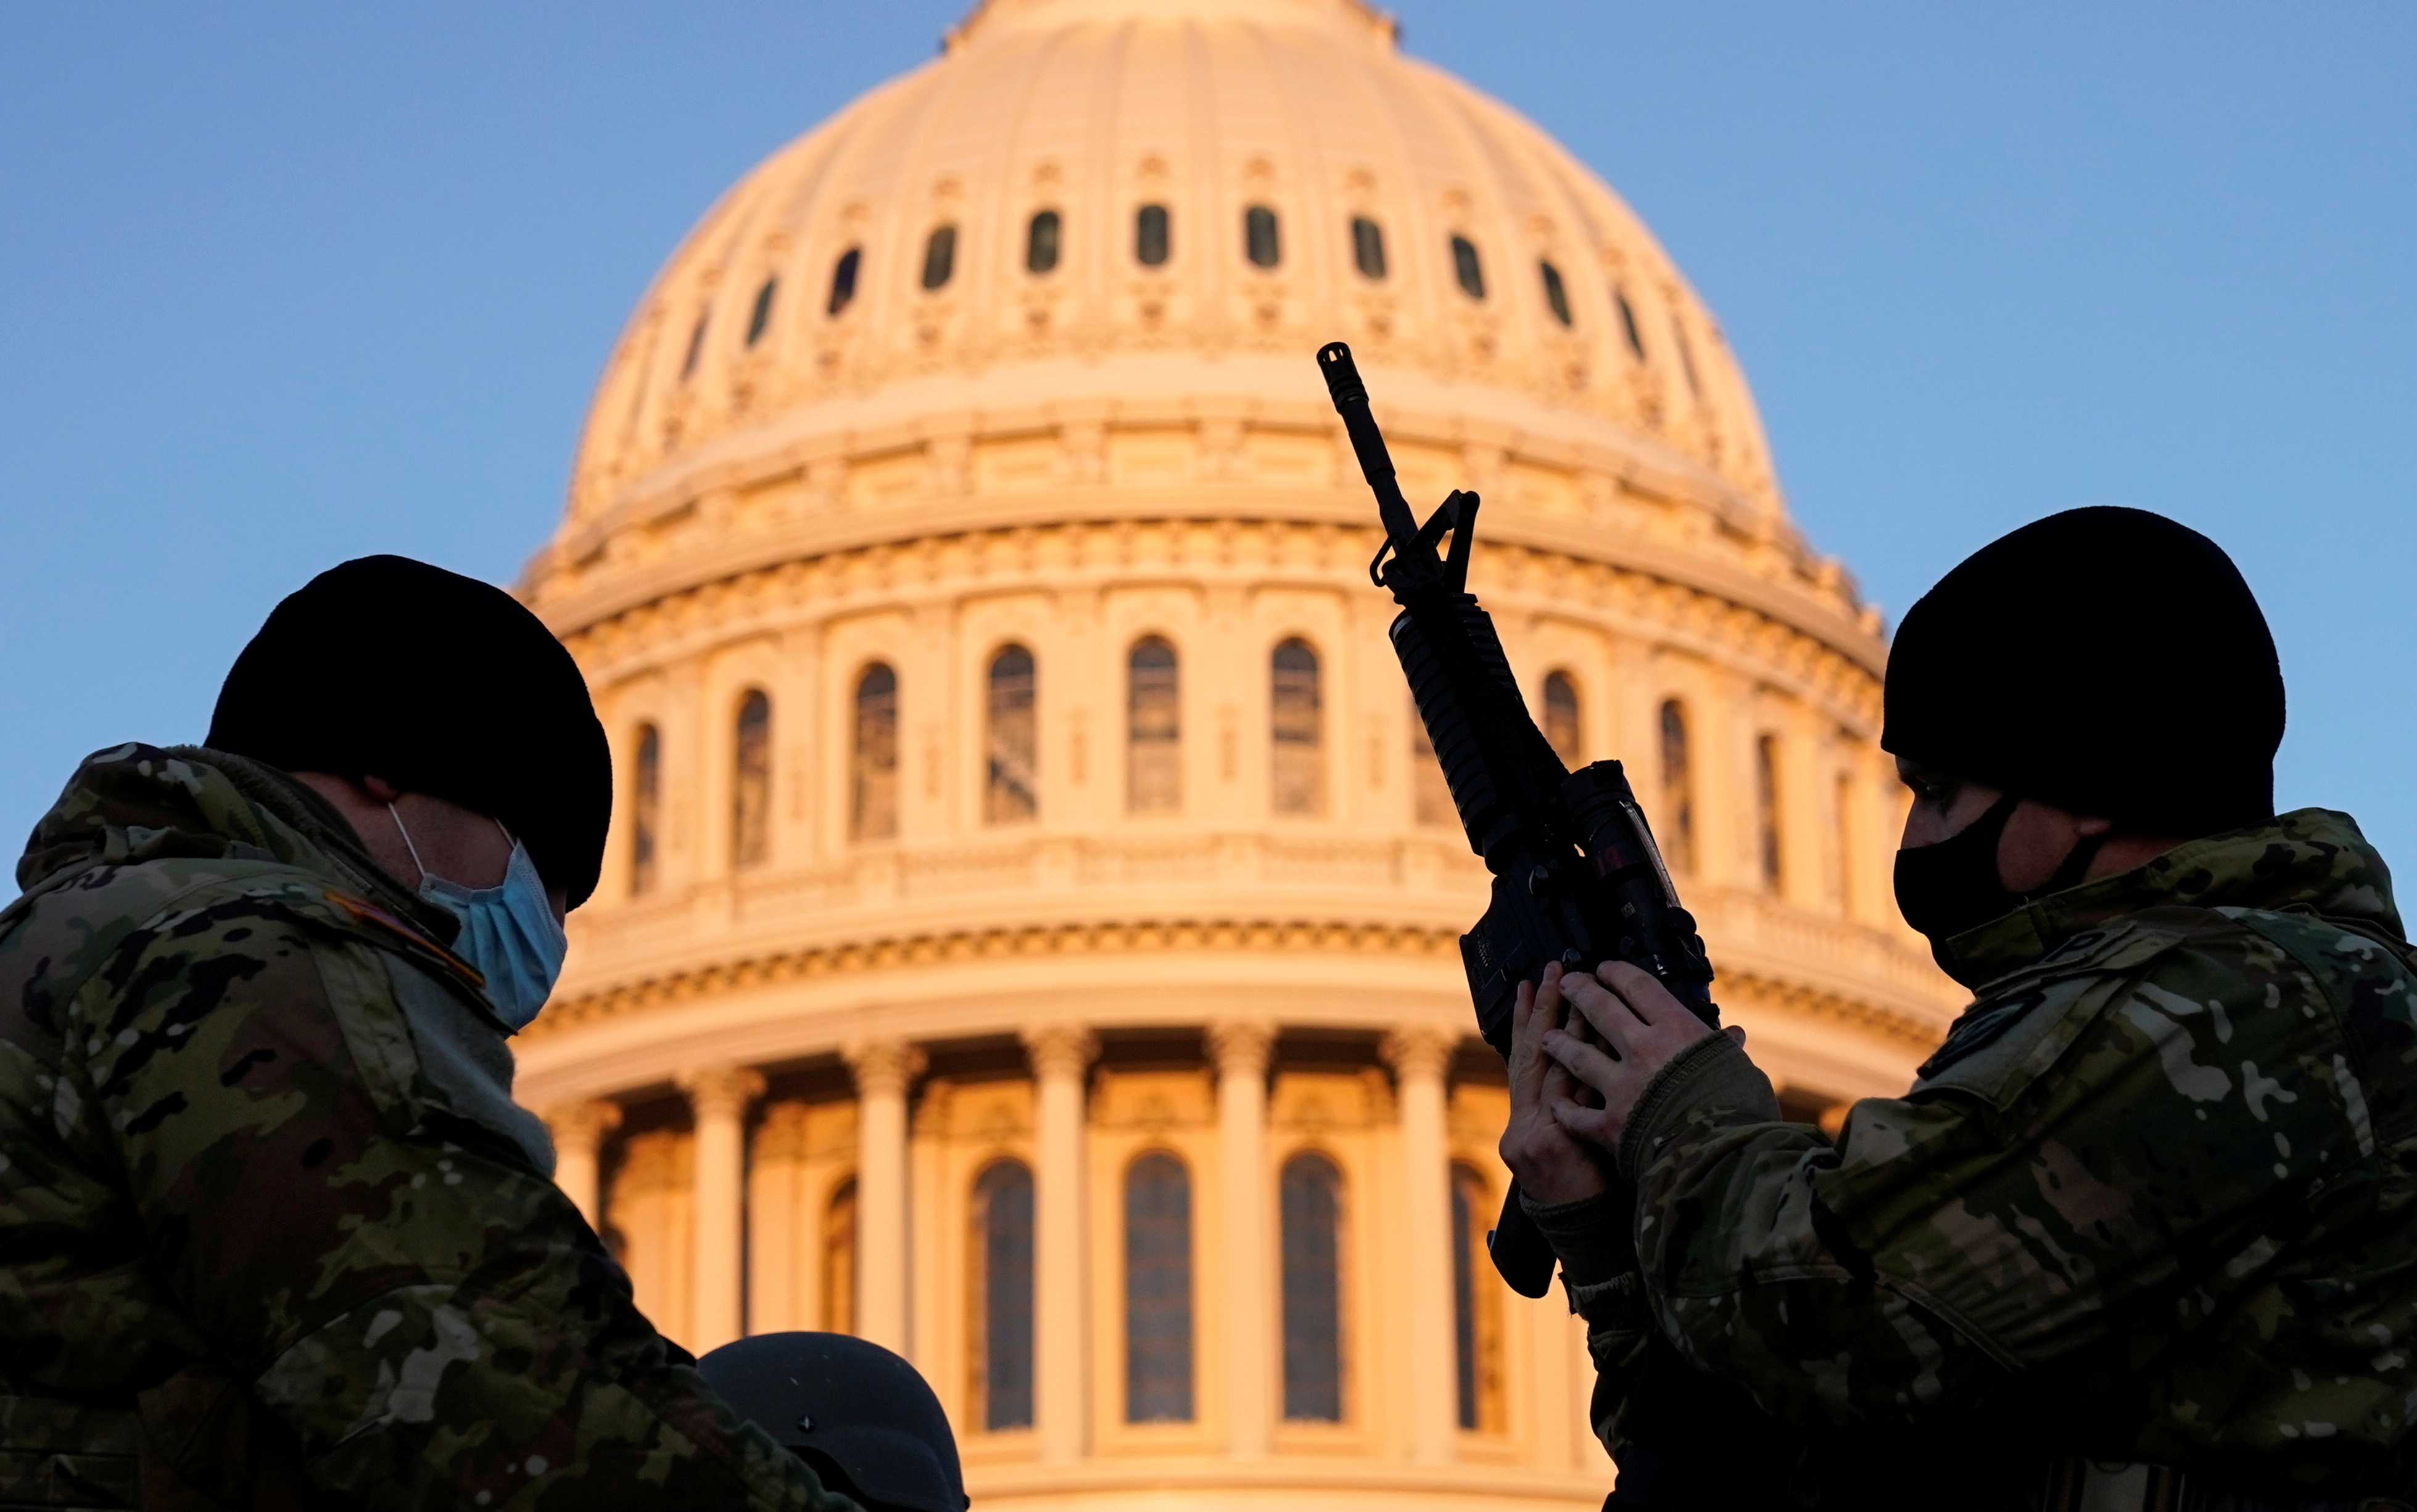 Dos soldados fotografiados frente a la emblemática cúpula del Capitolio, la sede del Congreso estadounidense (REUTERS/Joshua Roberts)